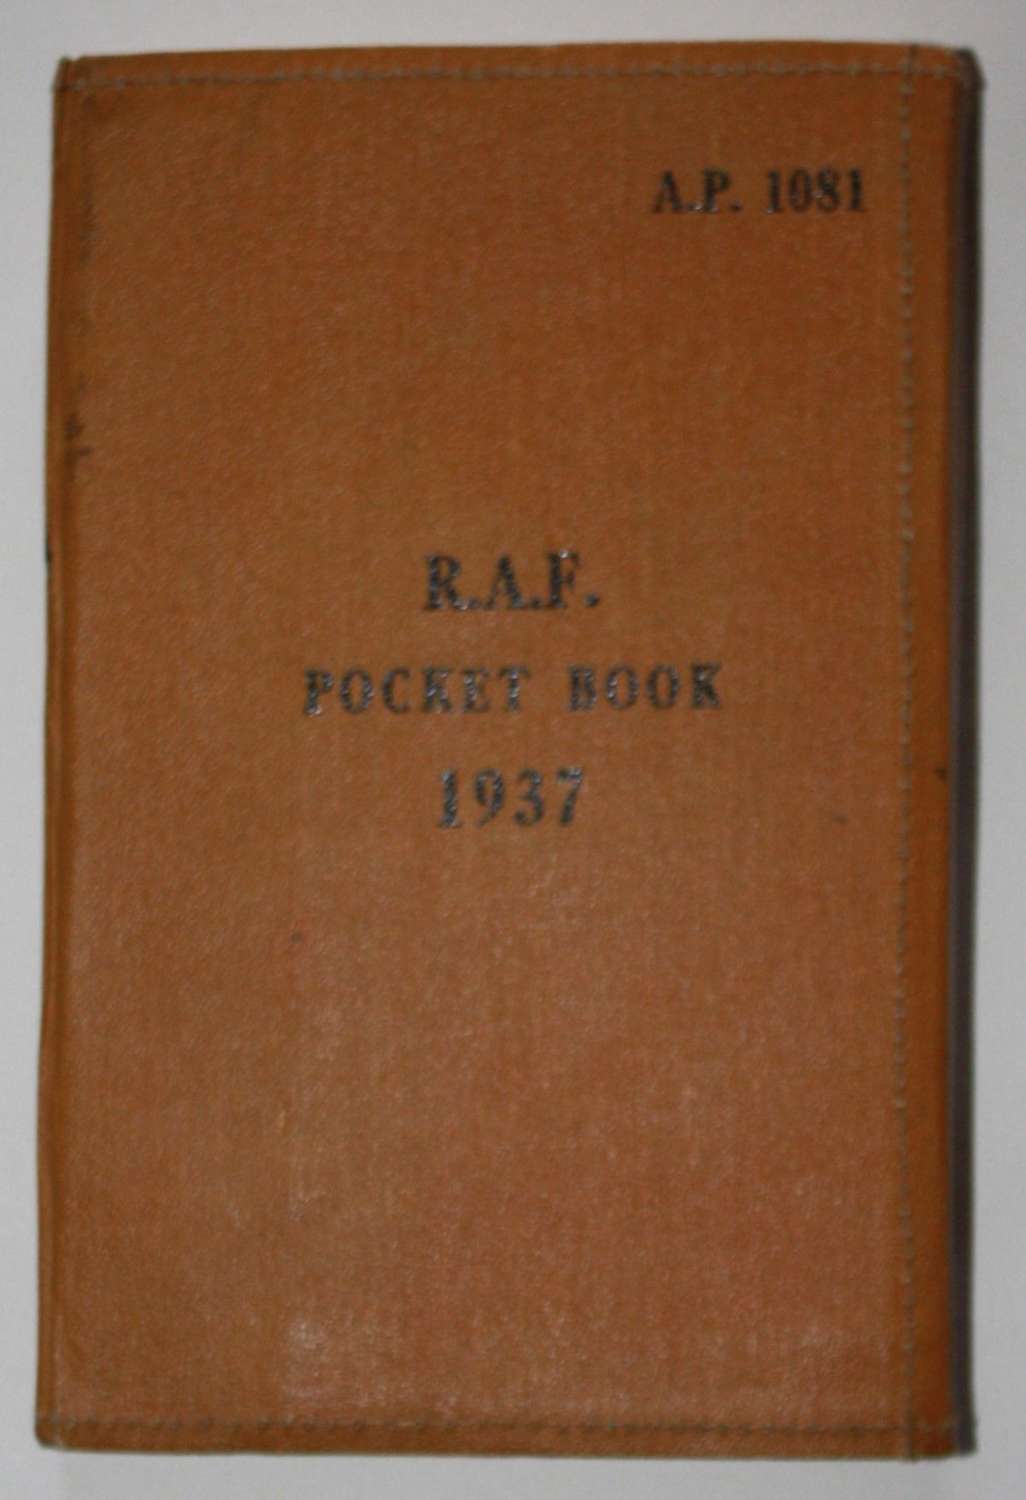 A 1937 RAF POCKET BOOT 1939 REPRINT  EDITION